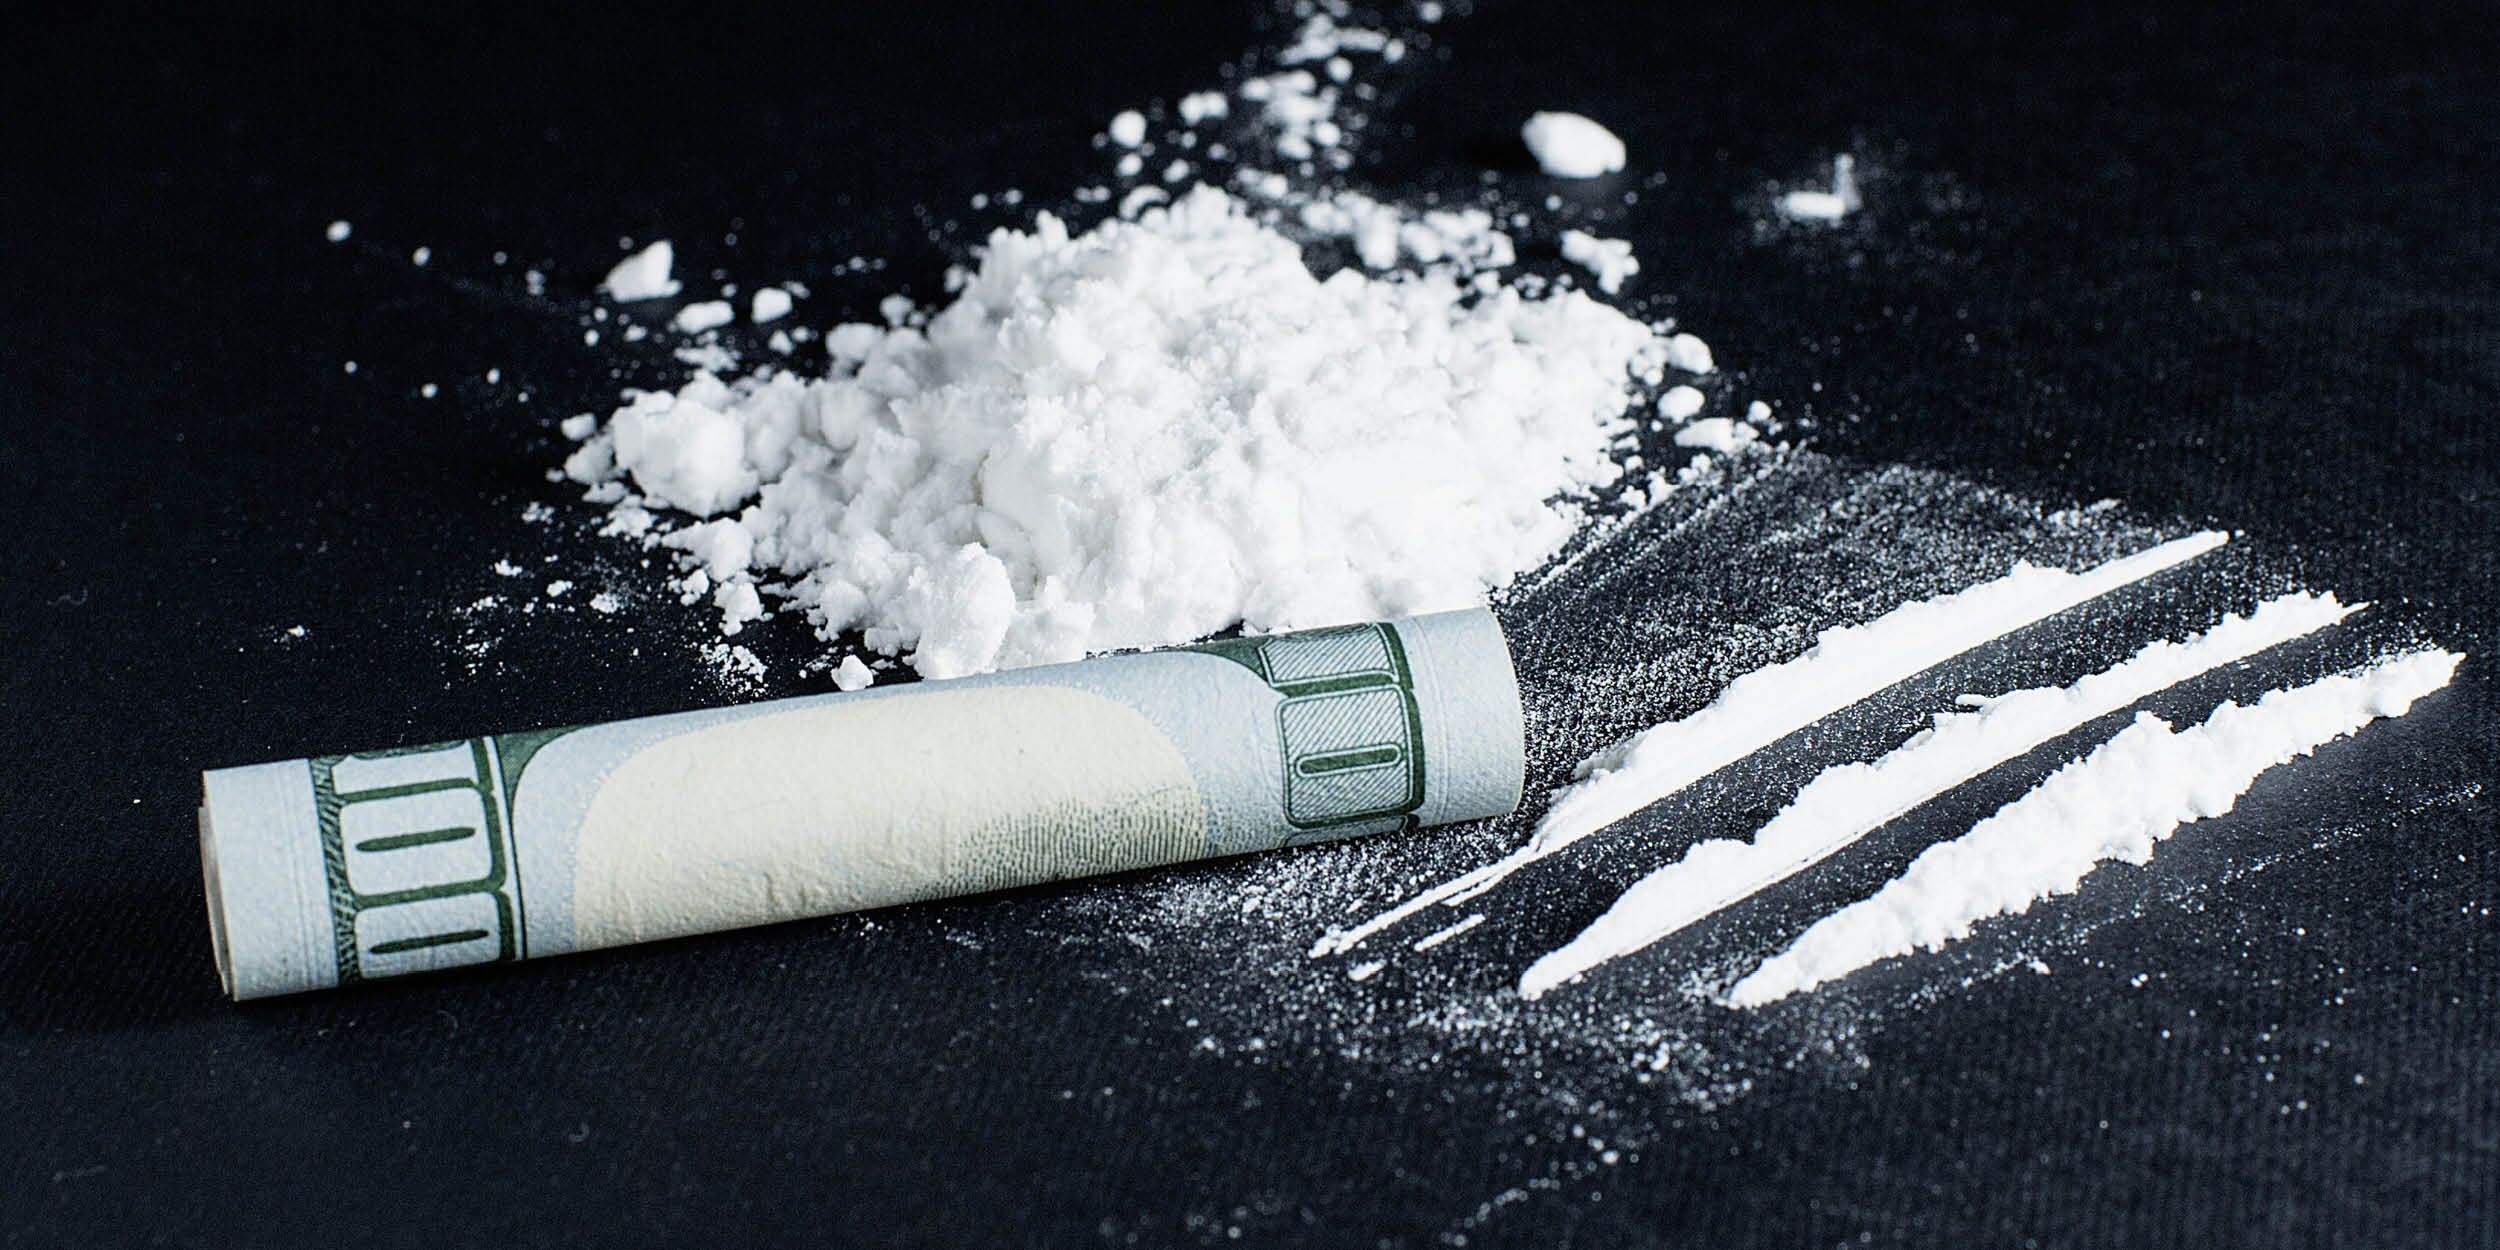 کوکائین (کوکایین) چیست و چه عوارض مخربی برای انسان دارد؟